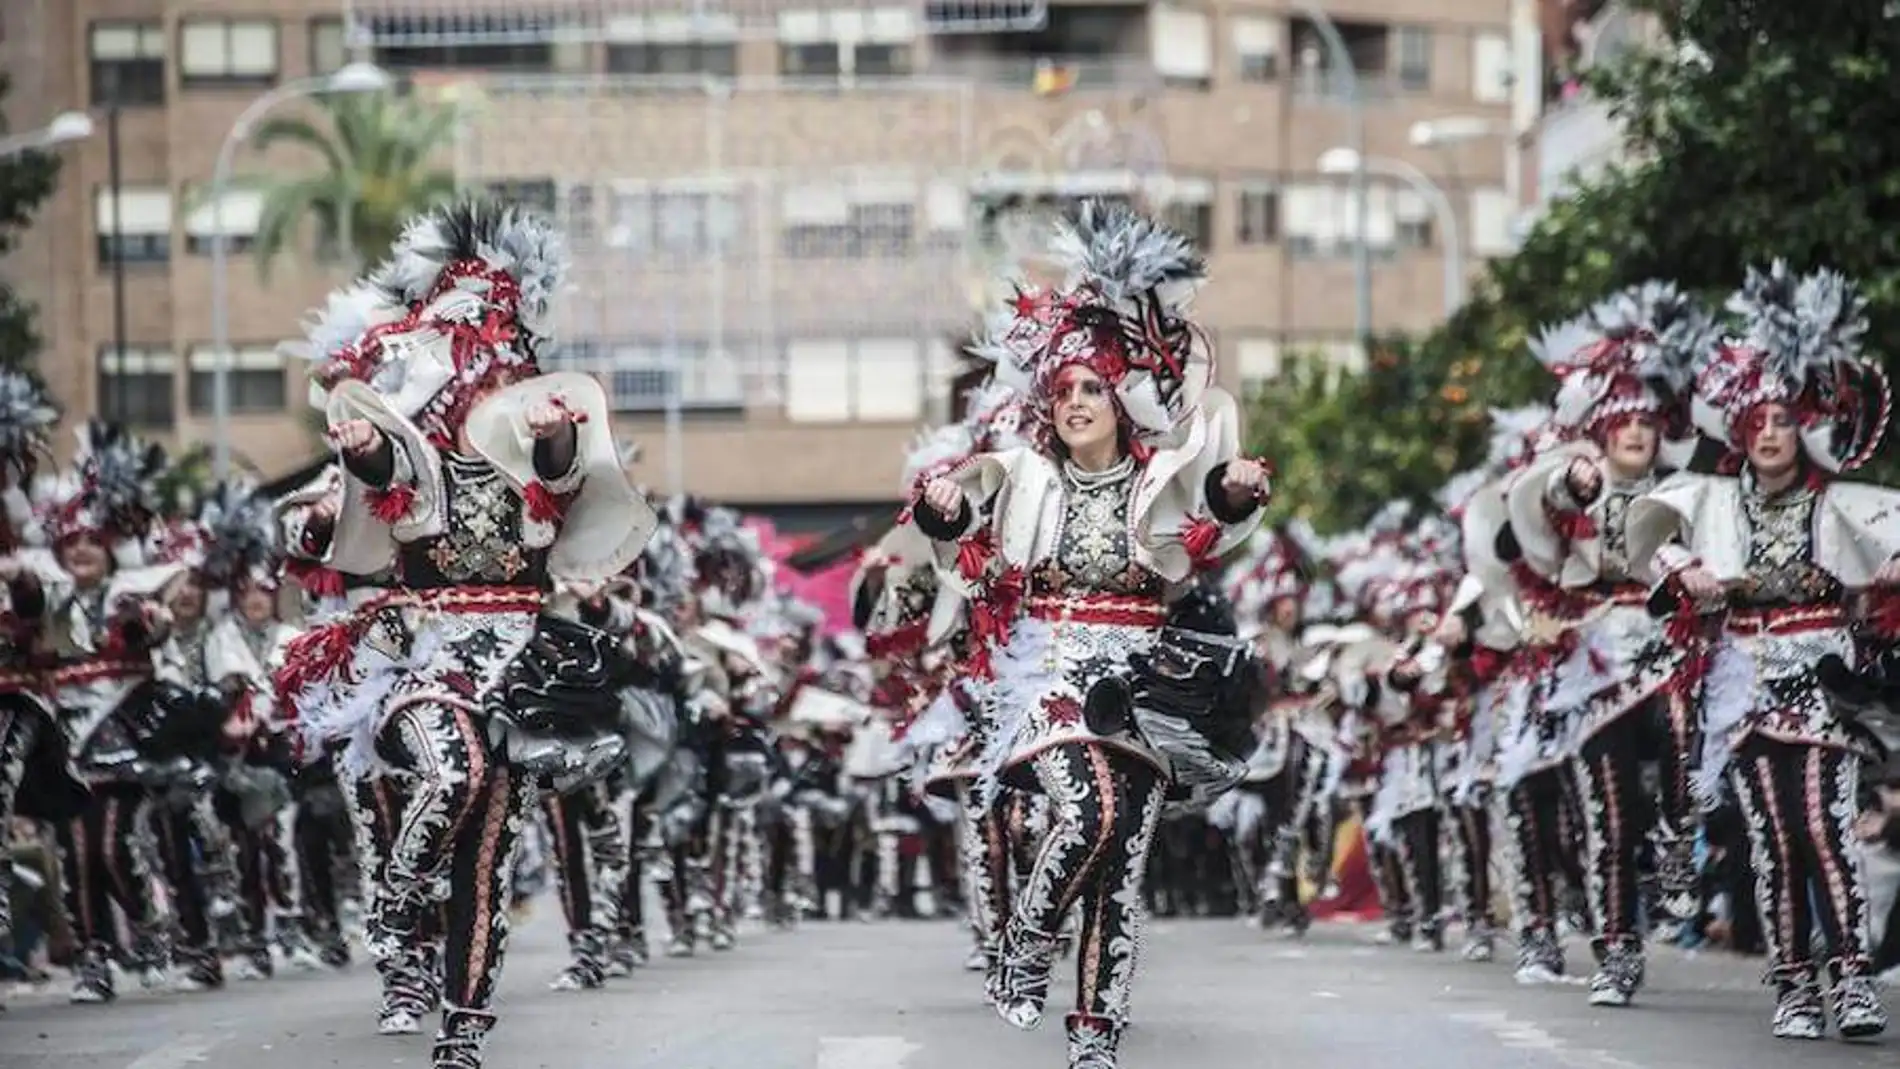 El alcalde afirma que "hay que ser cauto" con le Carnaval